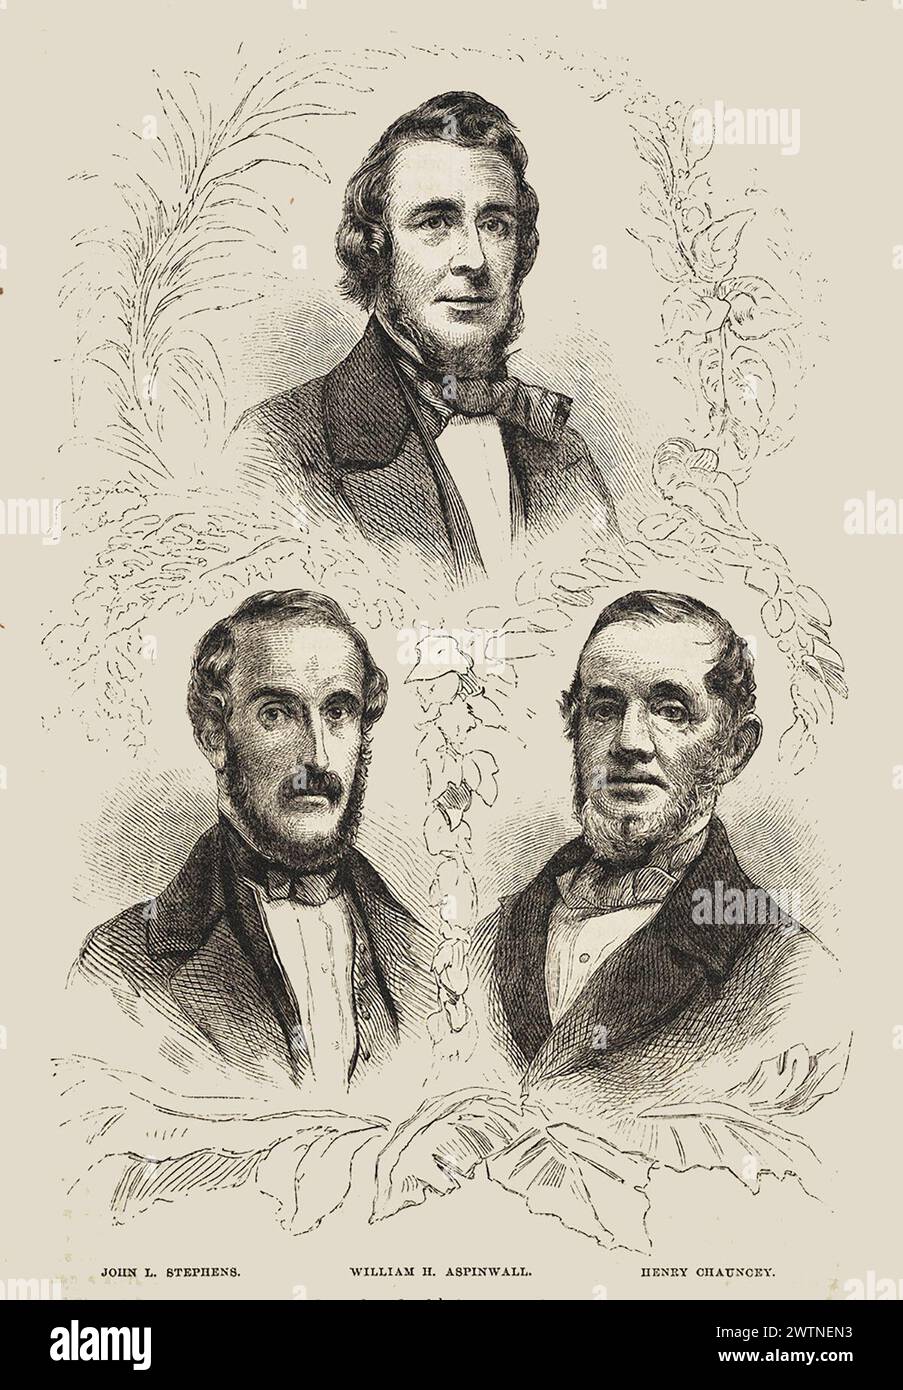 Fondateurs du Panama Railroad, John L. Stephens, William H. Aspinwall et Henry Chauncey Panex - janvier 1859 Banque D'Images